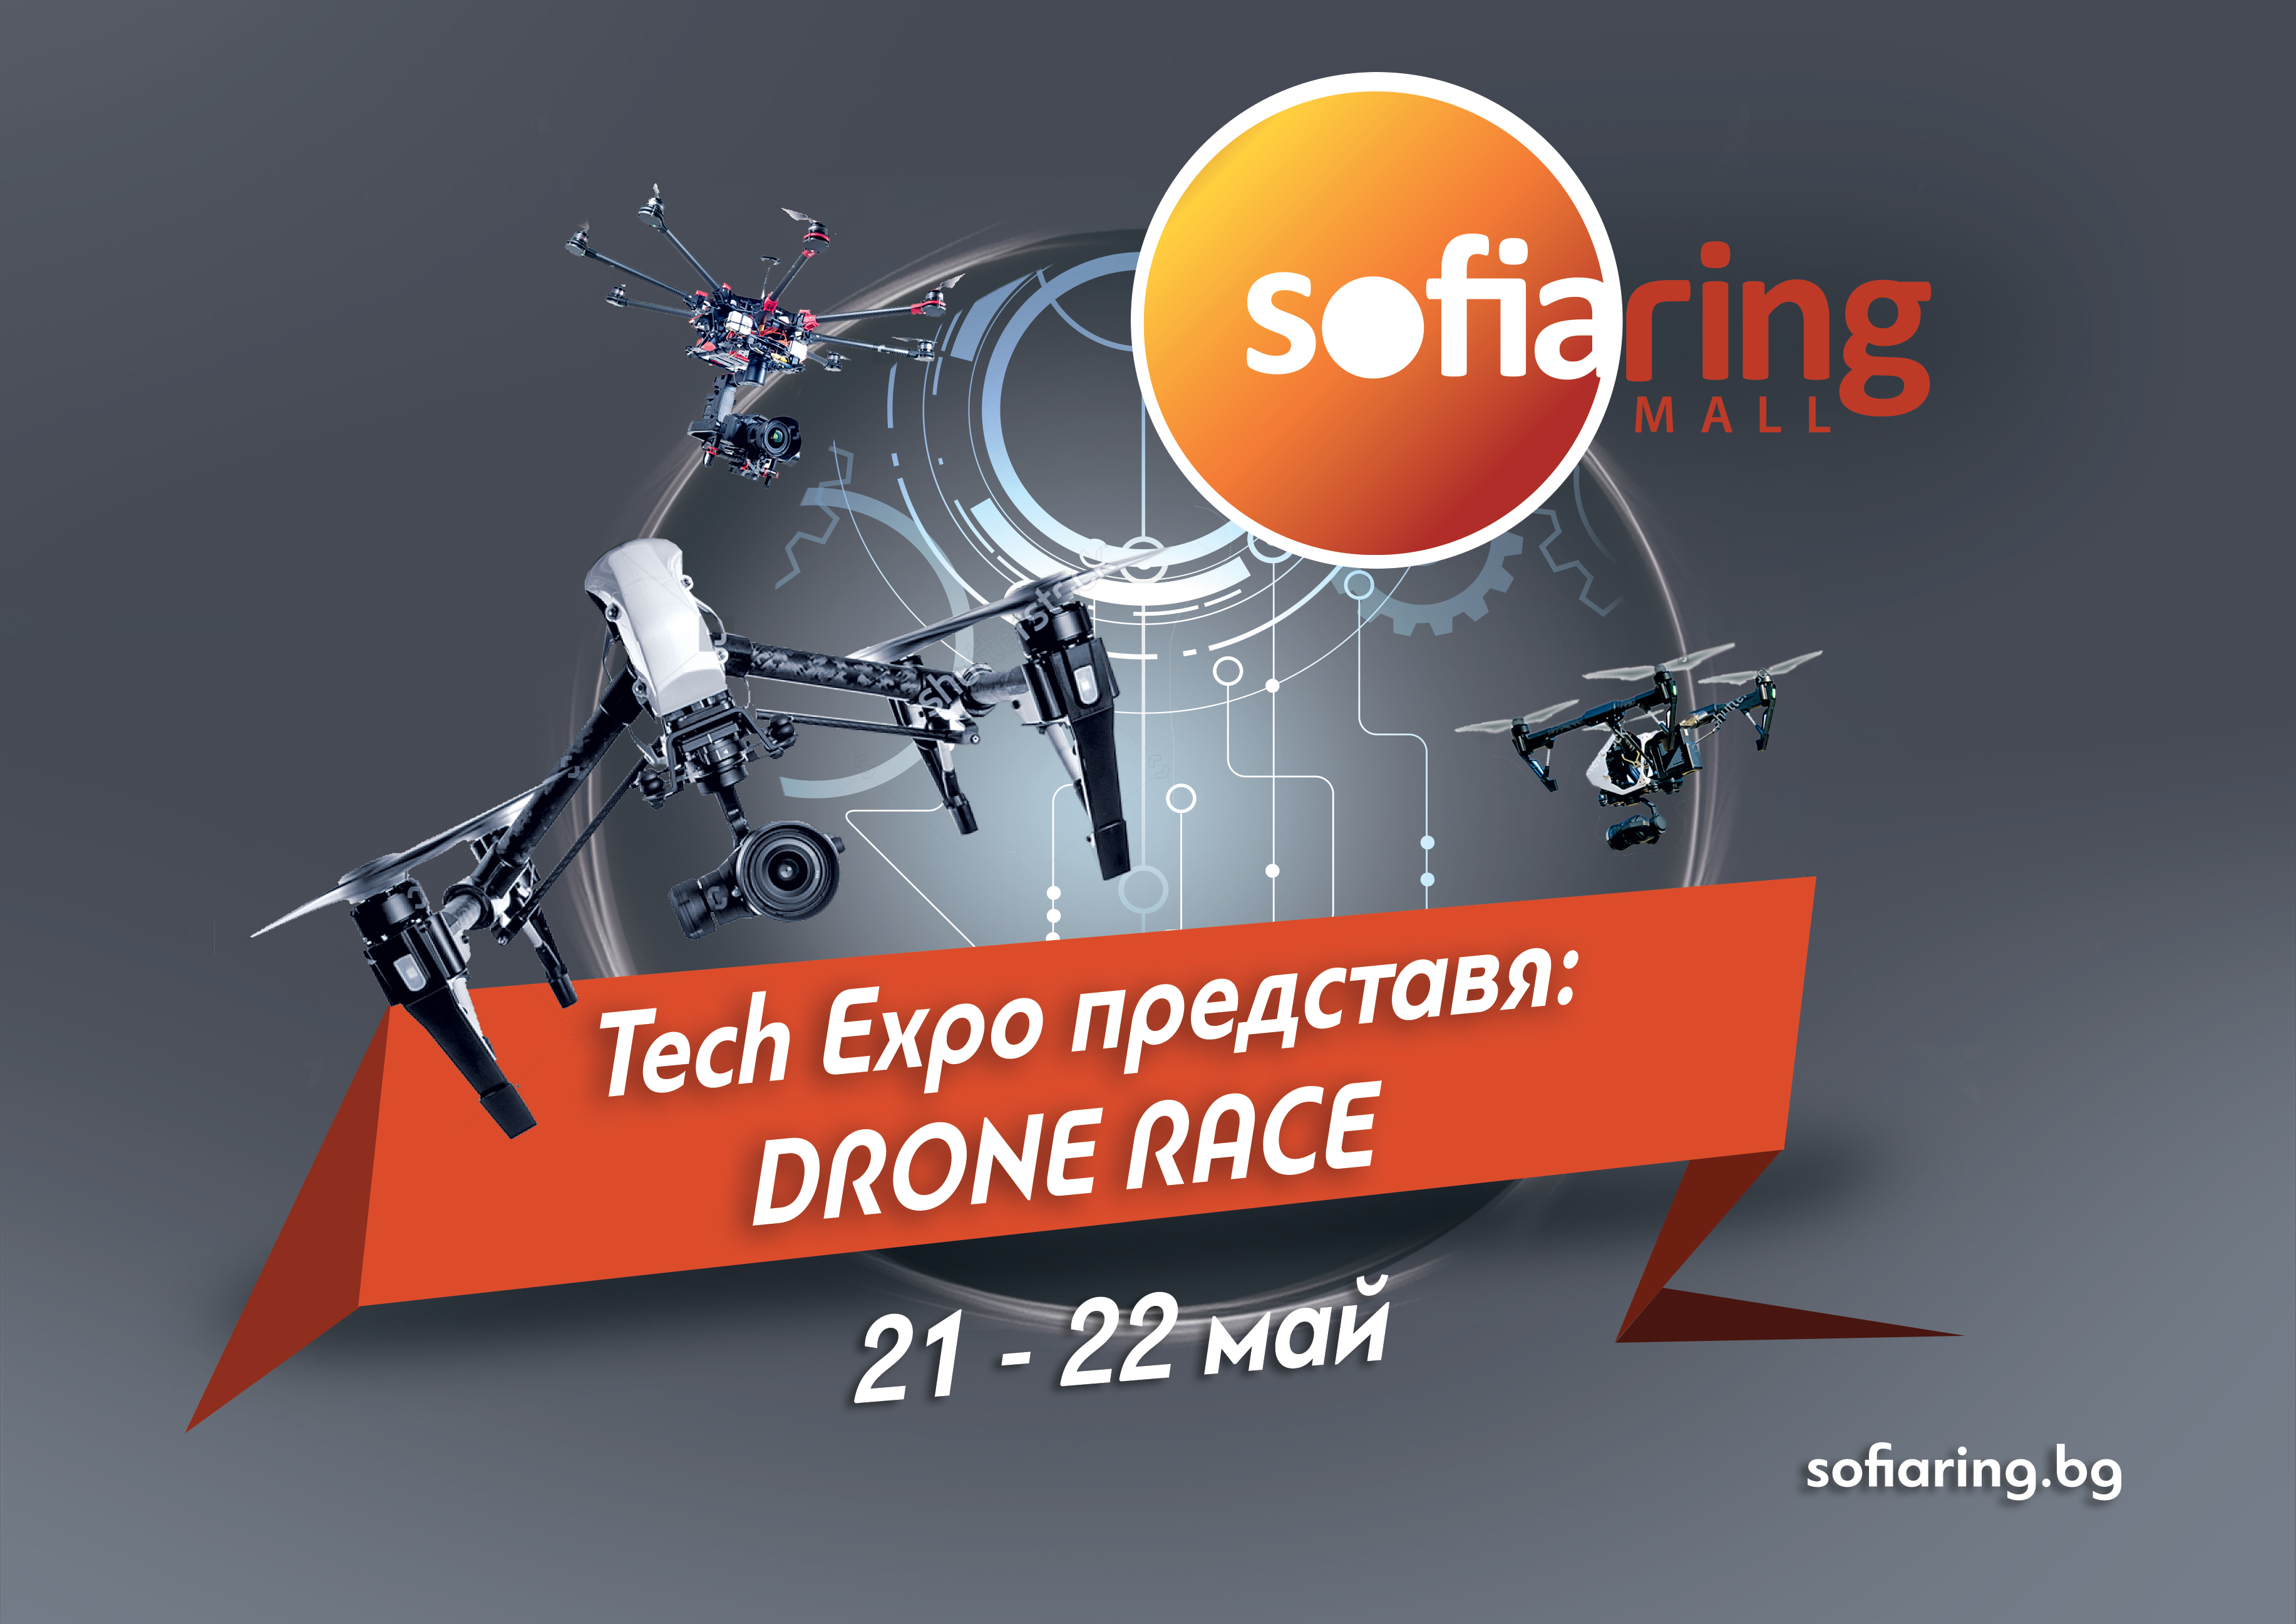 Първото състезание с дронове в България ще се проведе този уикенд, в Sofia Ring Mall